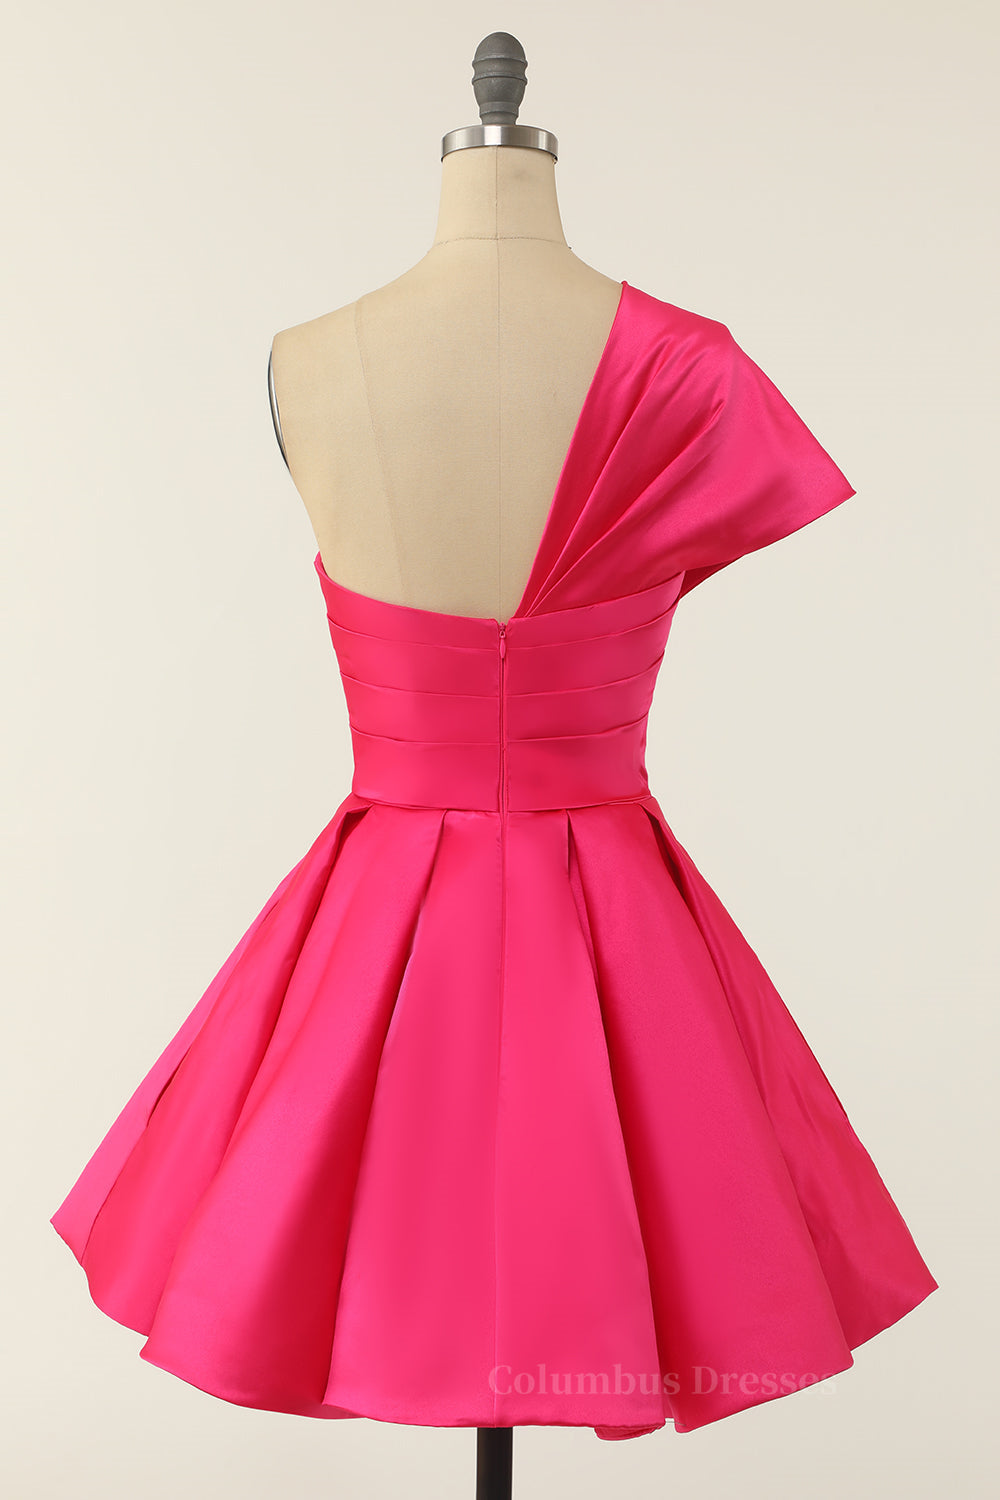 Red Carpet Dress, Hot Pink One Shoulder Short A-line Party Dress